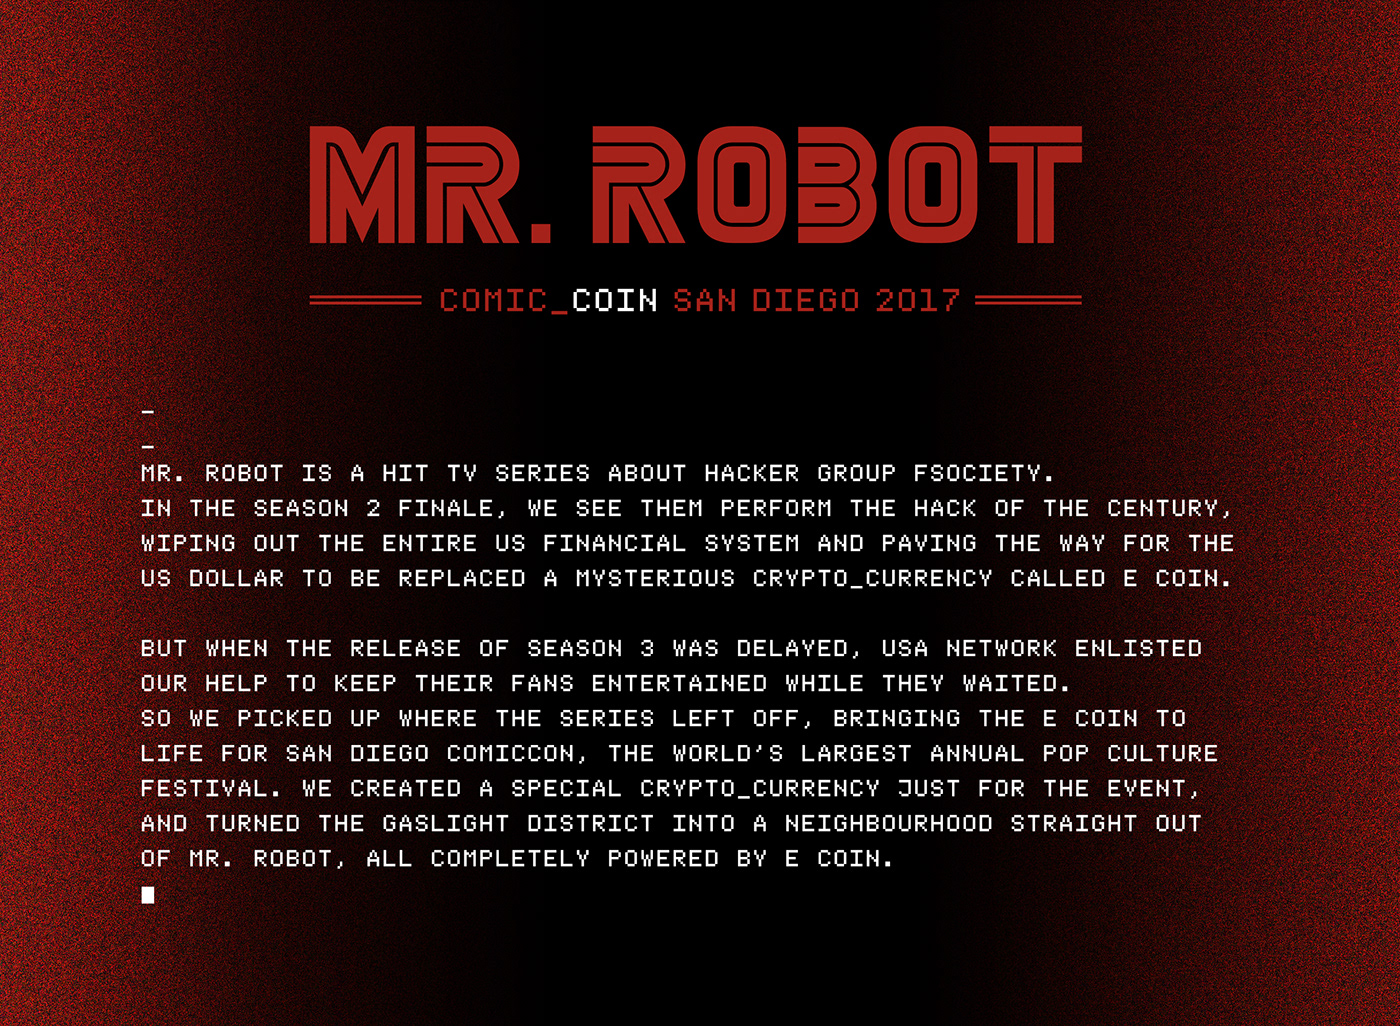 Mr Robot Comic Con USA Network BBR Advertising  art direction  arg E-coin alice&smith